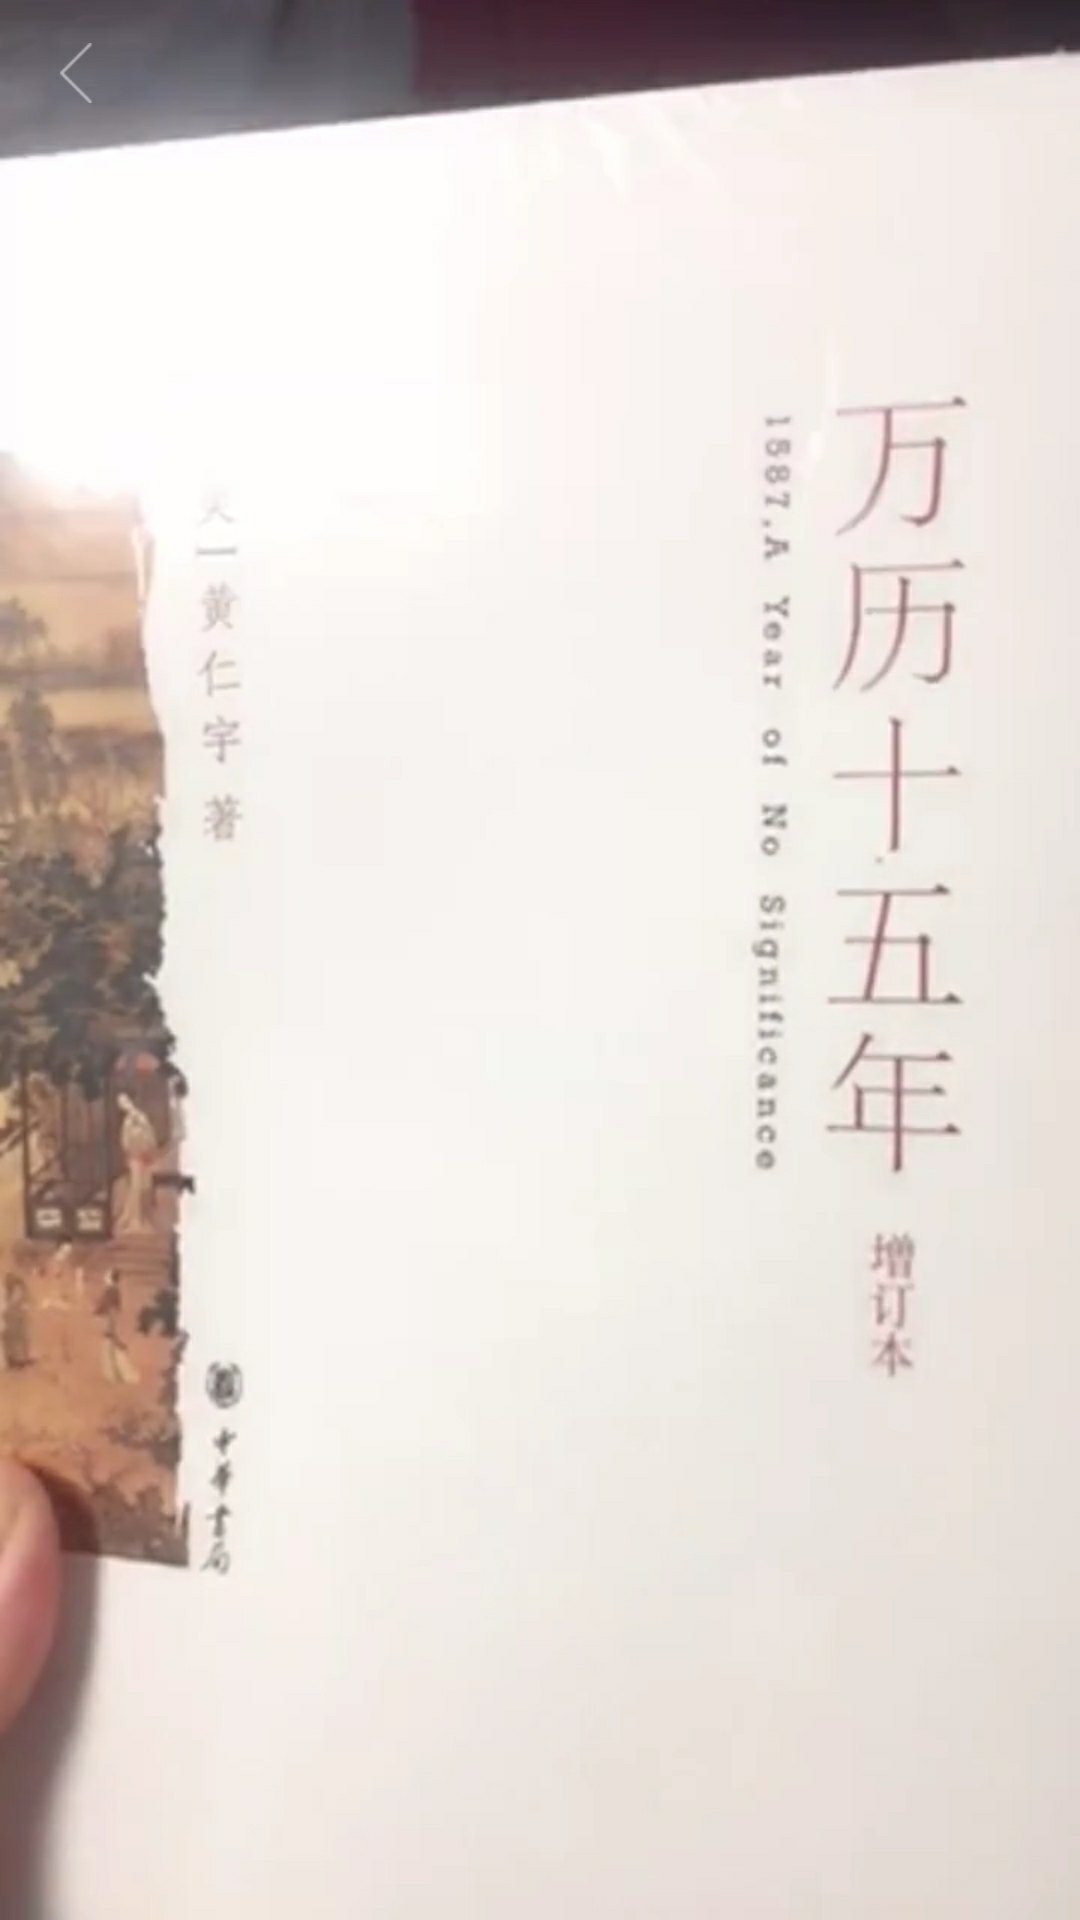 中国史的书我都是在买的，快递给力，纸质不错